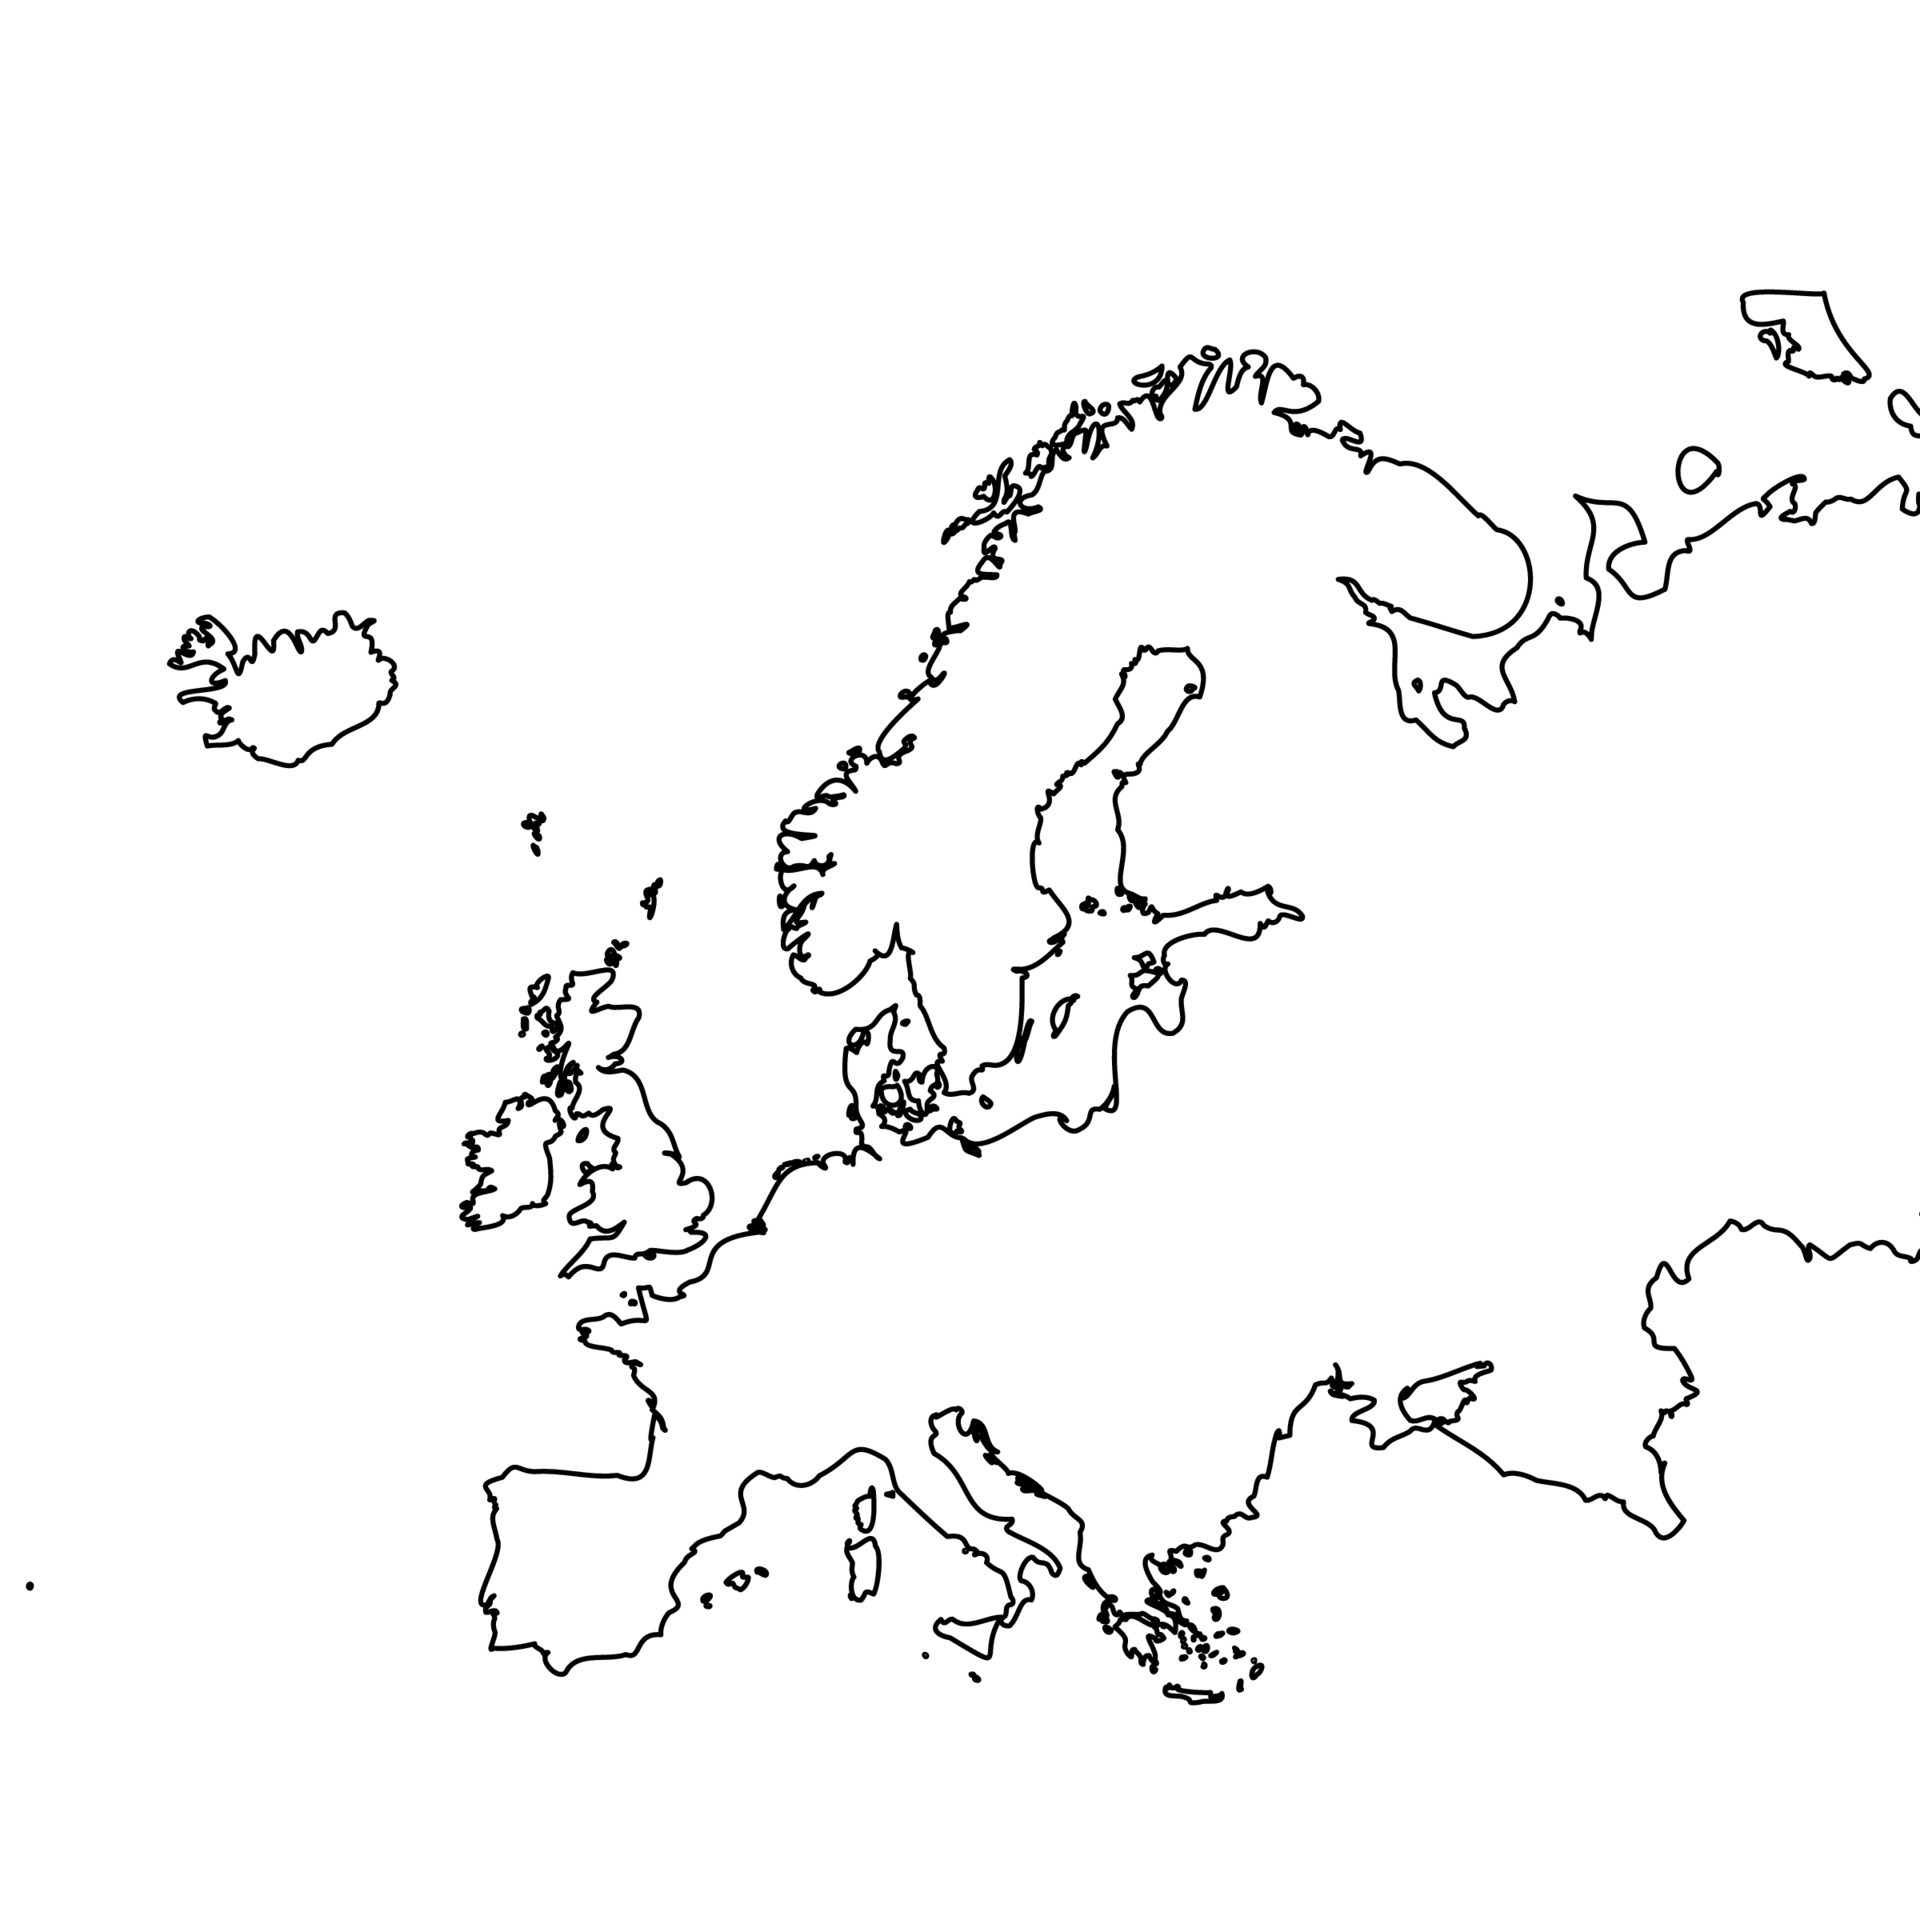 Mappa dell'Europa in bianco e nero 119836 Arte vettoriale a Vecteezy